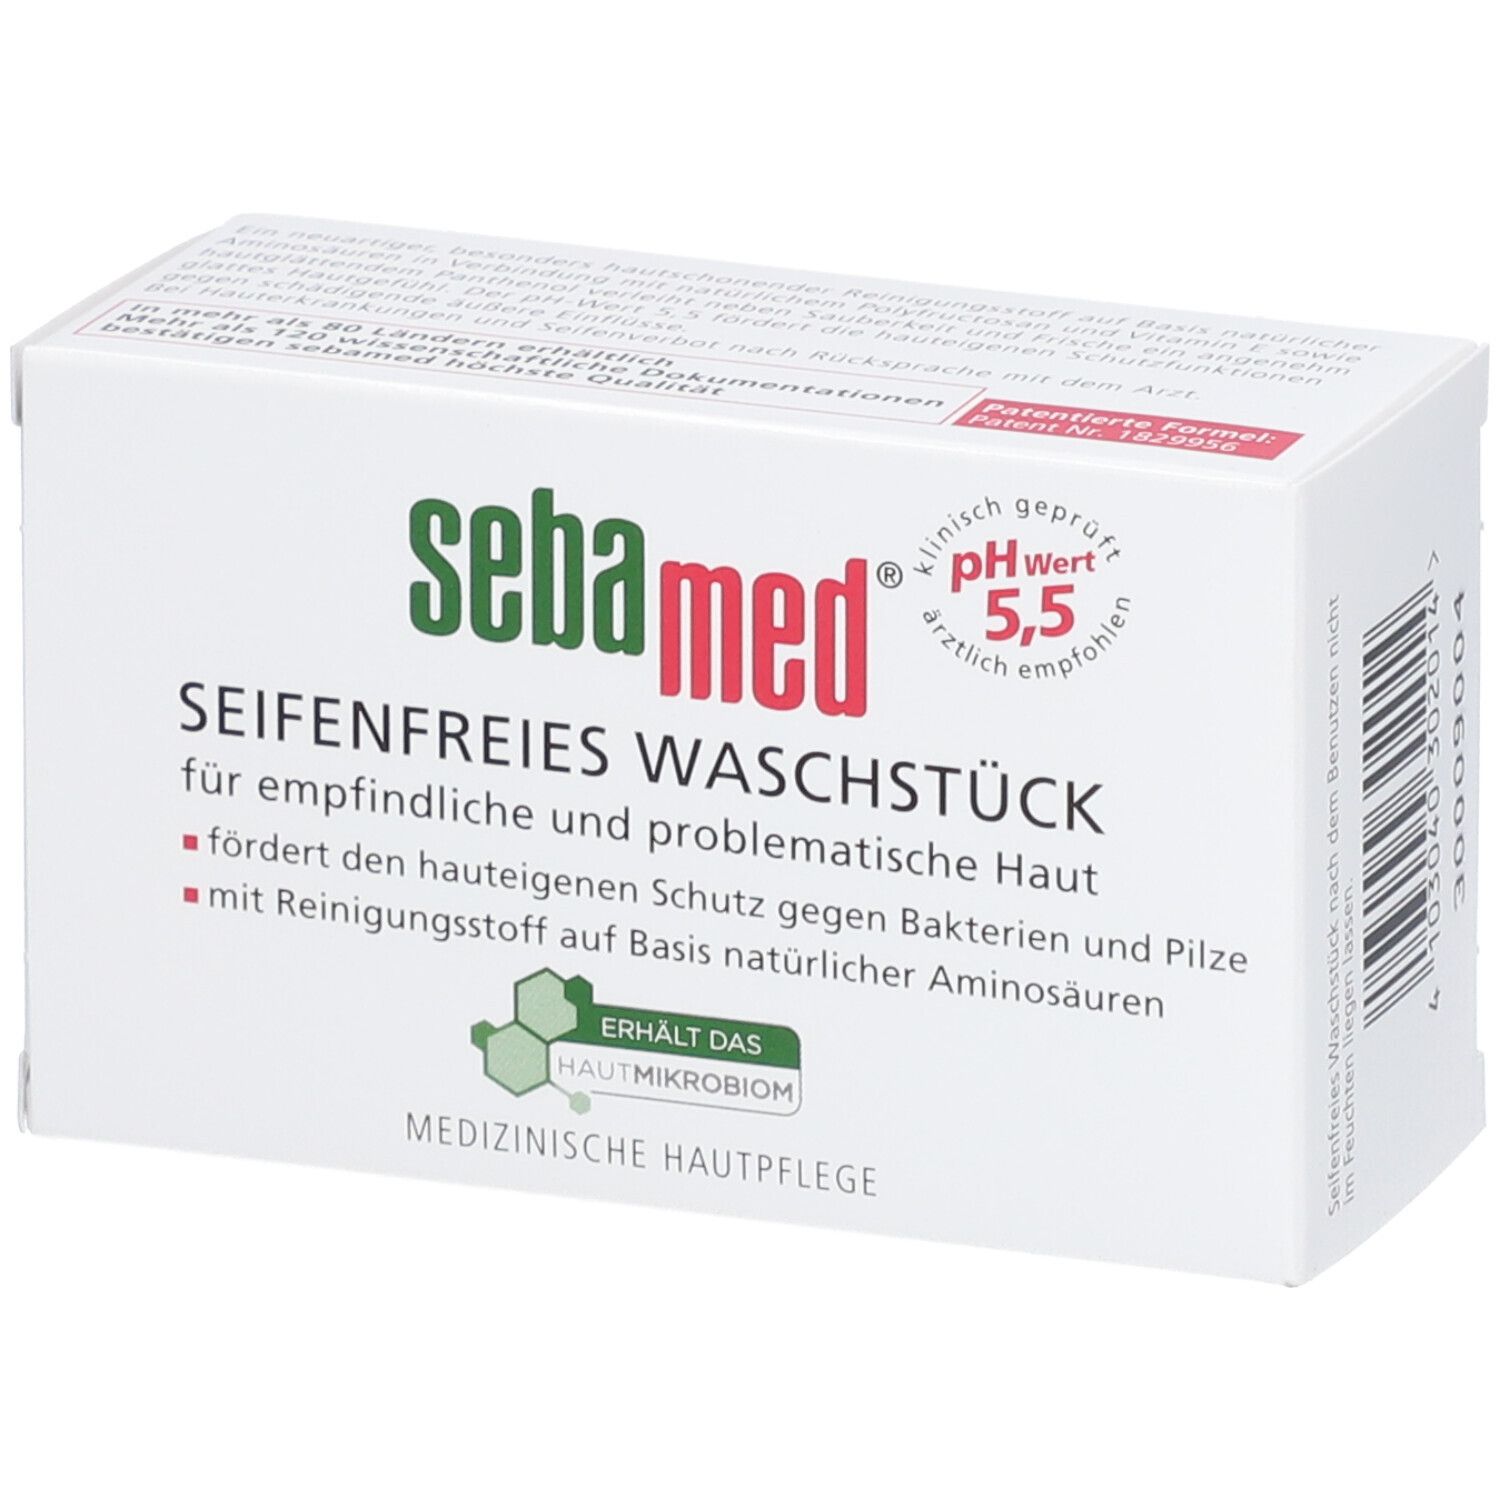 sebamed® seifenfreies Waschstück